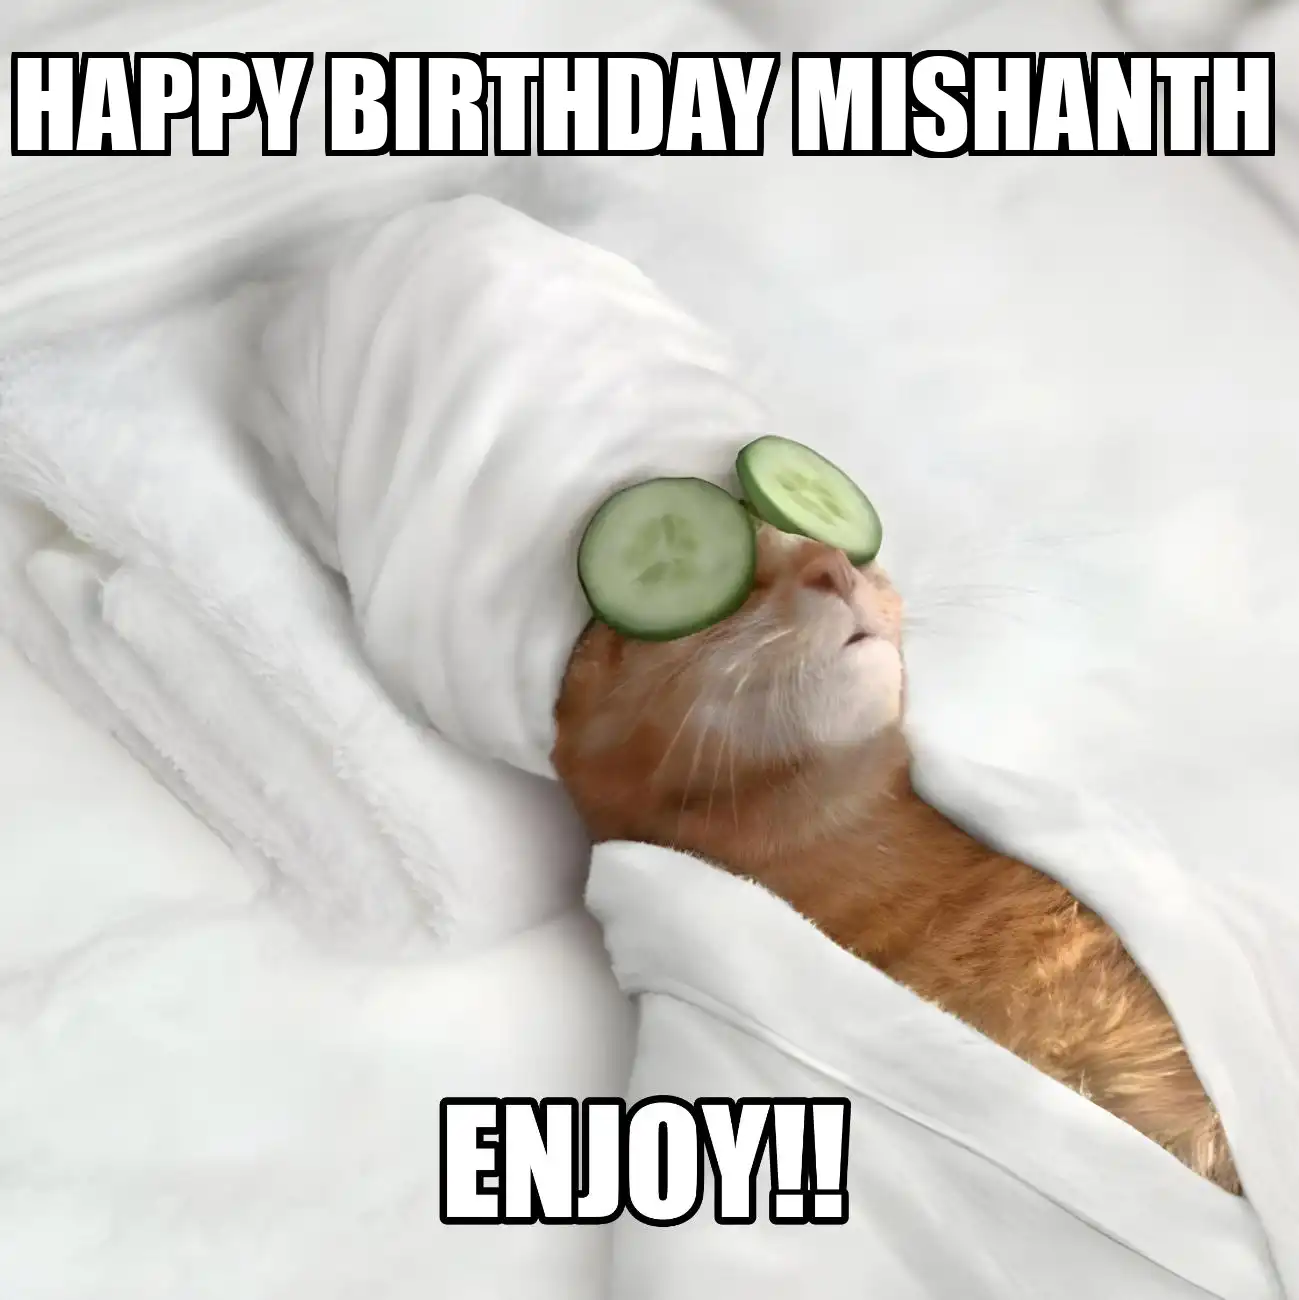 Happy Birthday Mishanth Enjoy Cat Meme